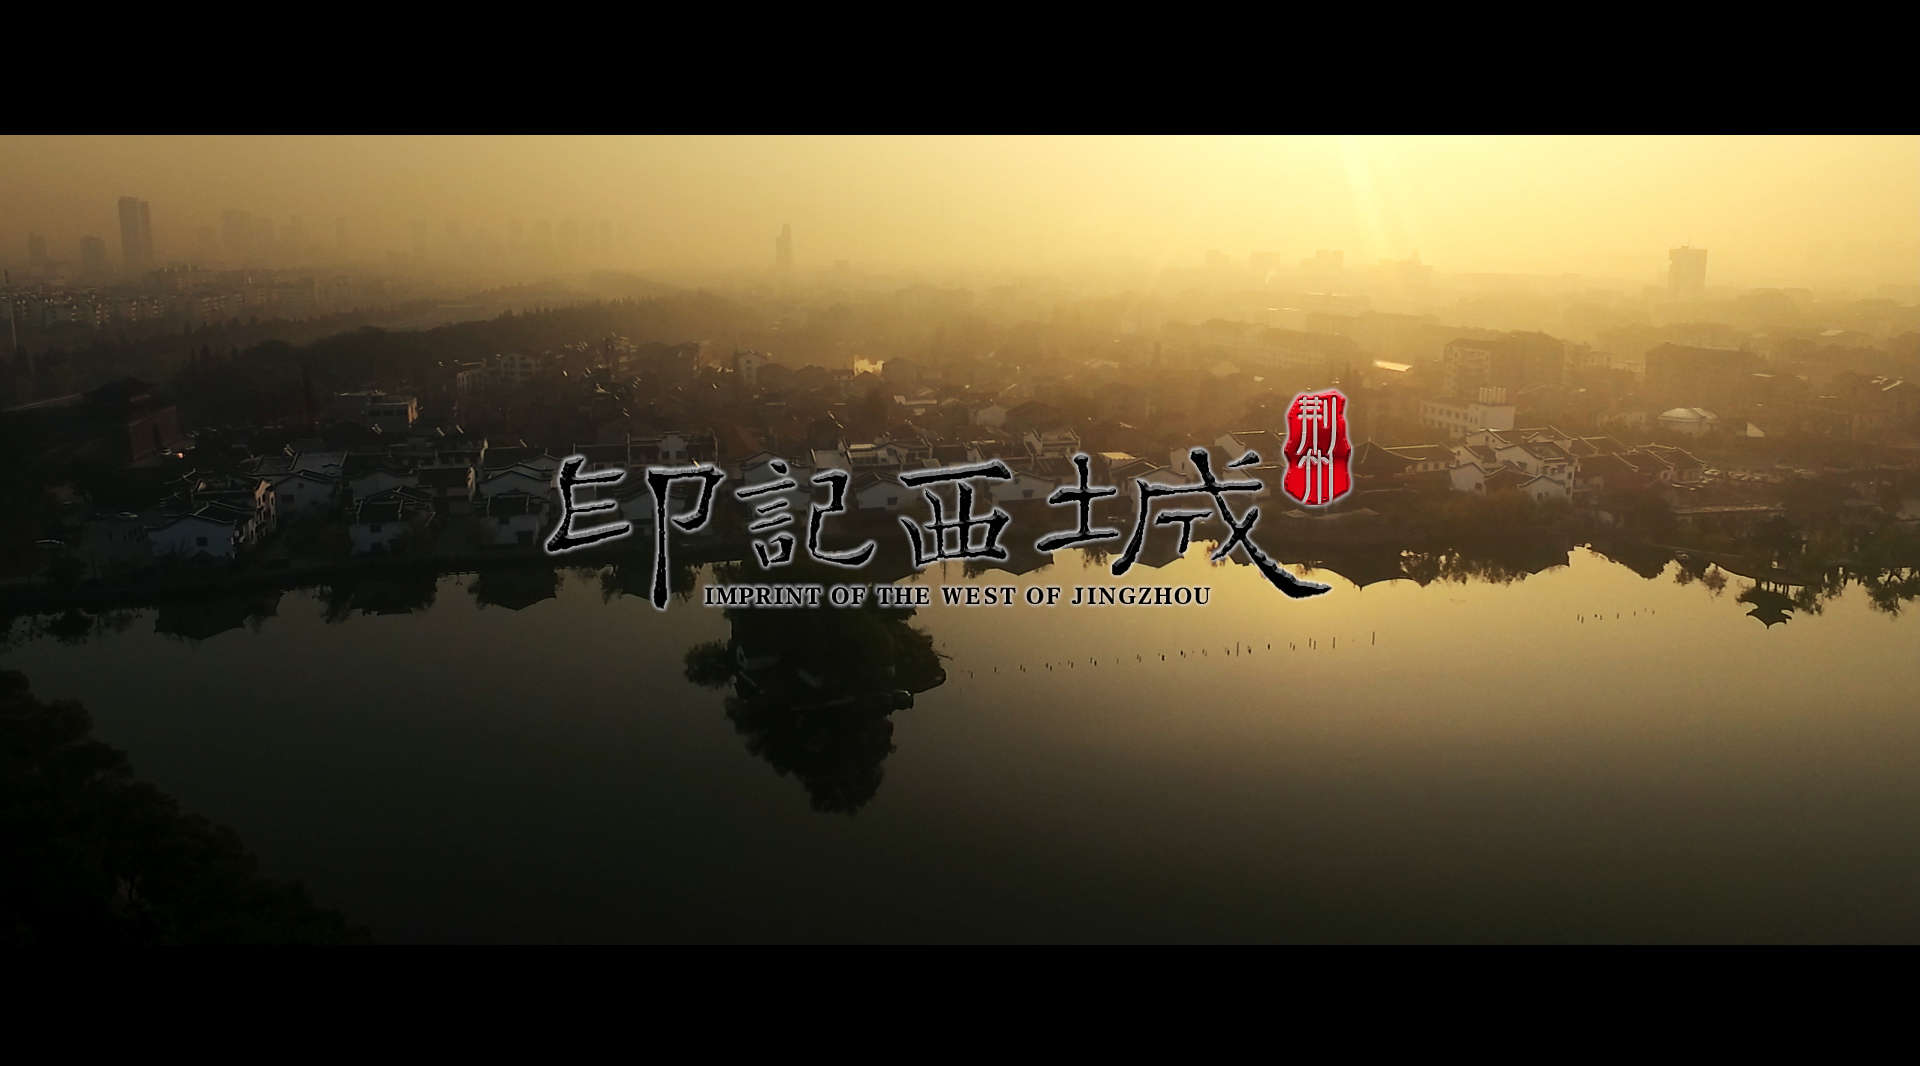 荆州西城2018最新旅游形象宣传片《印记西城》